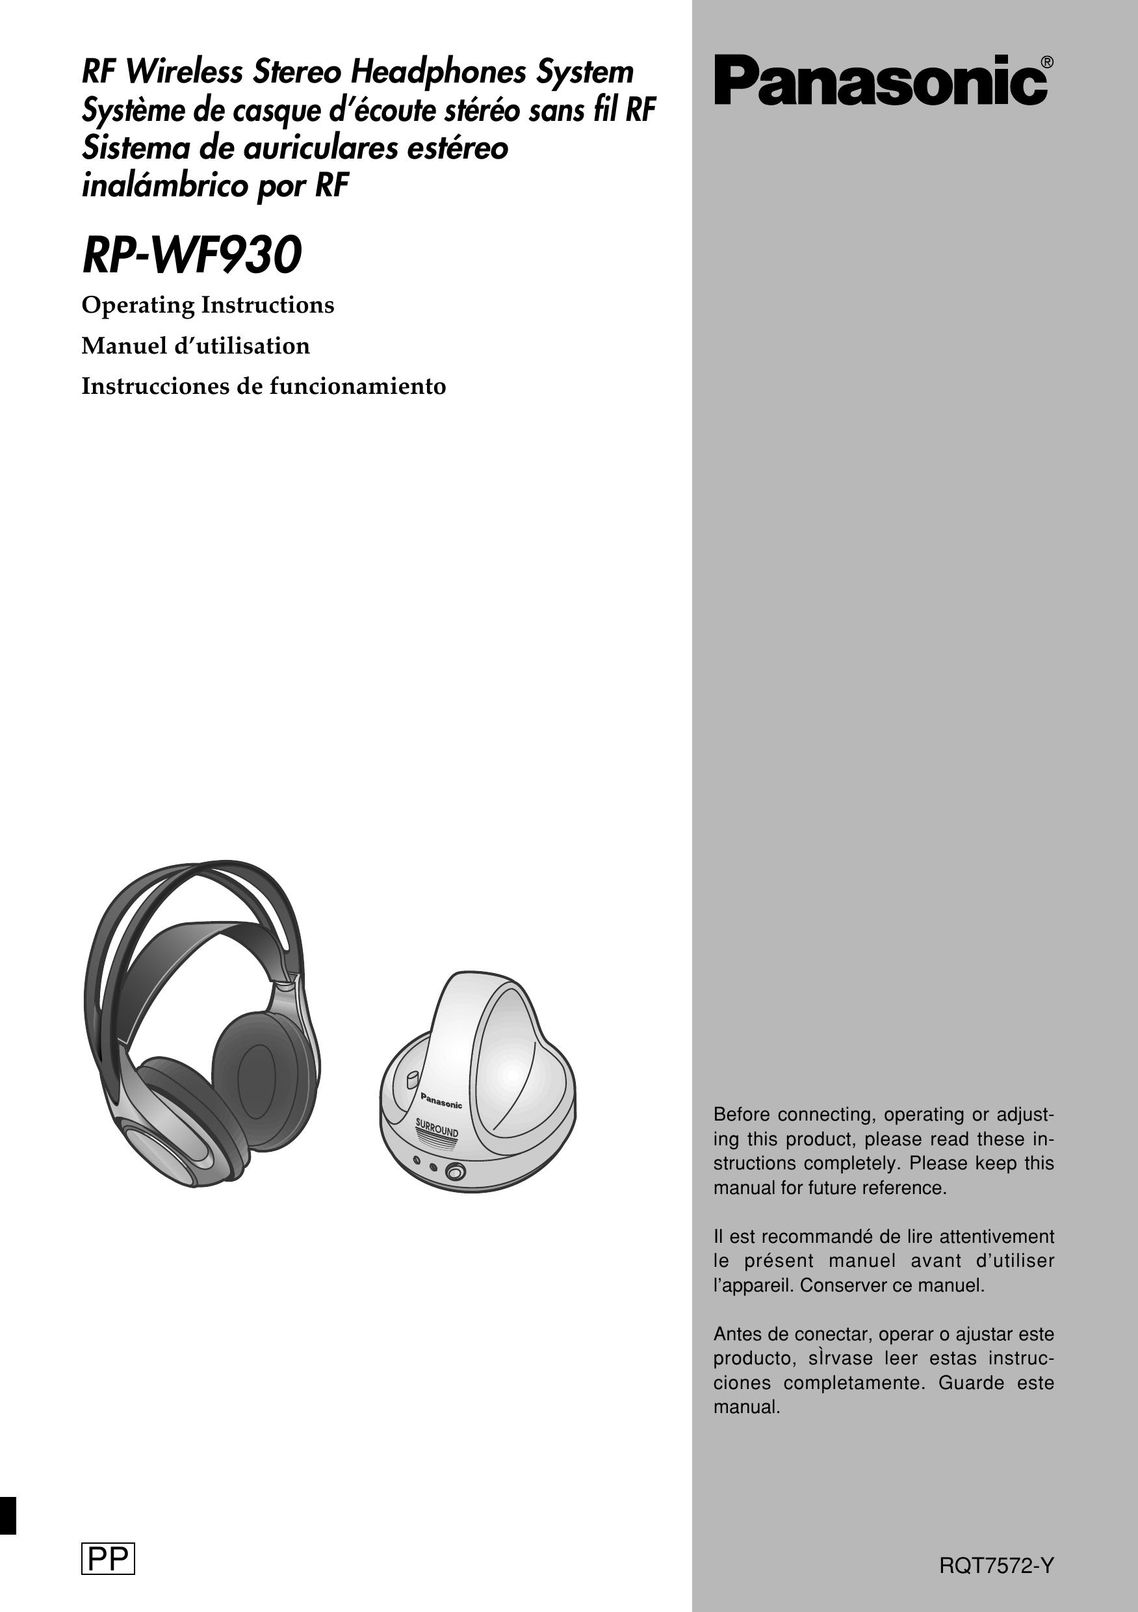 Panasonic RP-WF930 Headphones User Manual